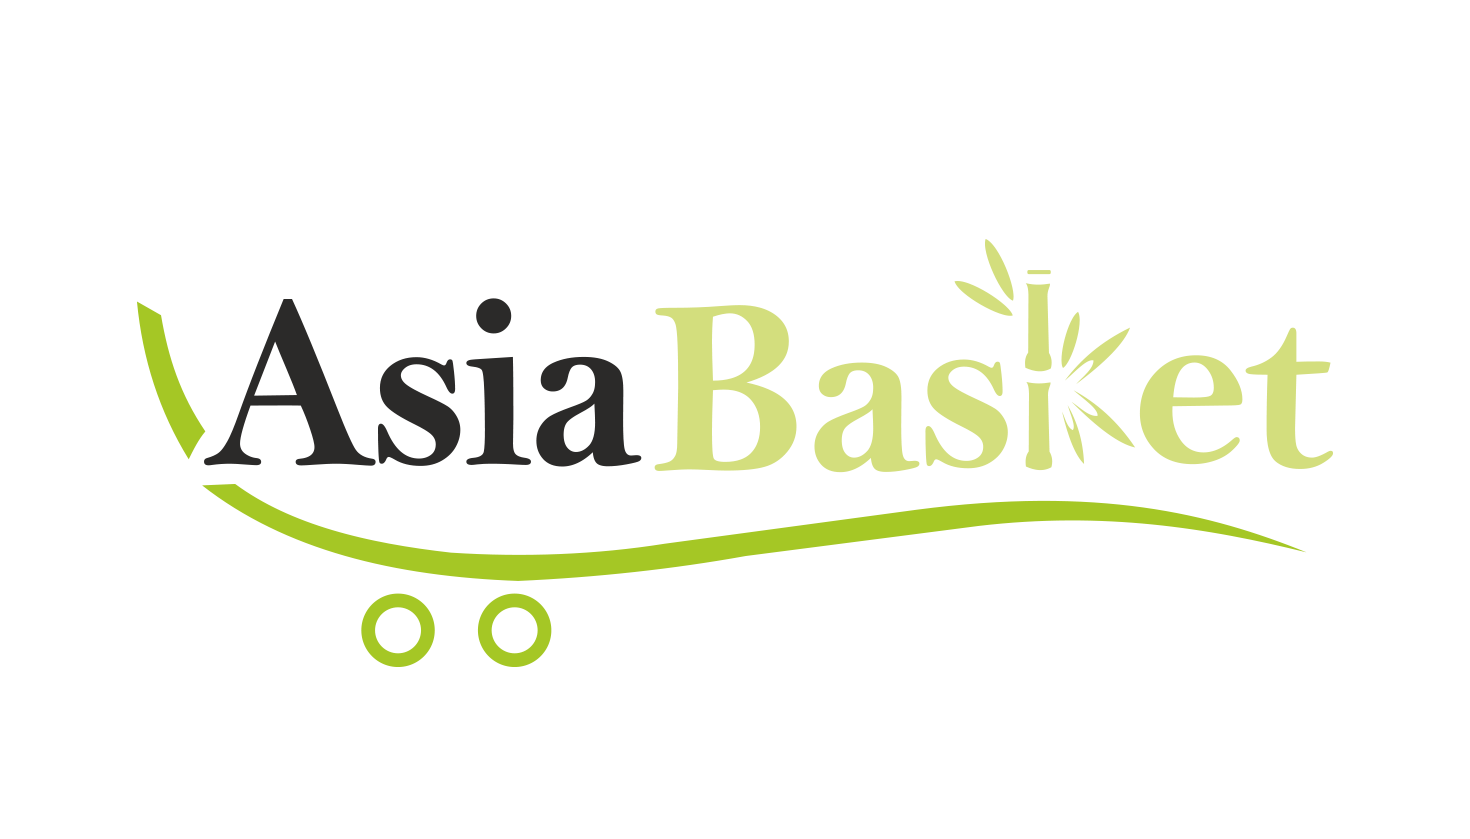 بقالة سلة اسيا - Asia Basket Store